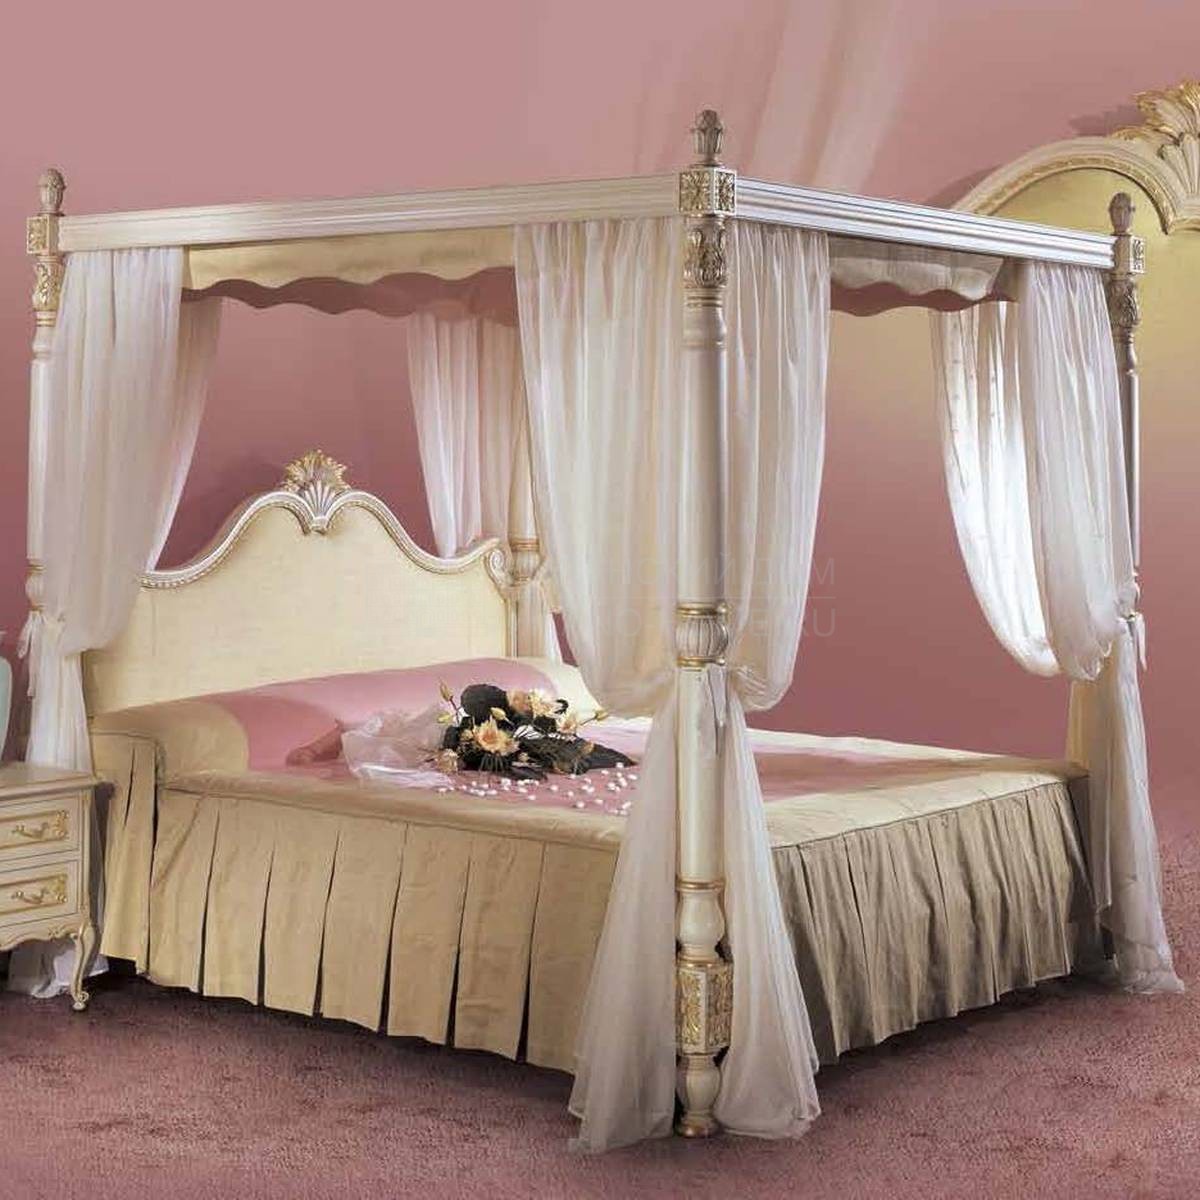 Кровать с балдахином Brahms art.7639-21B из Италии фабрики ANGELO CAPPELLINI 